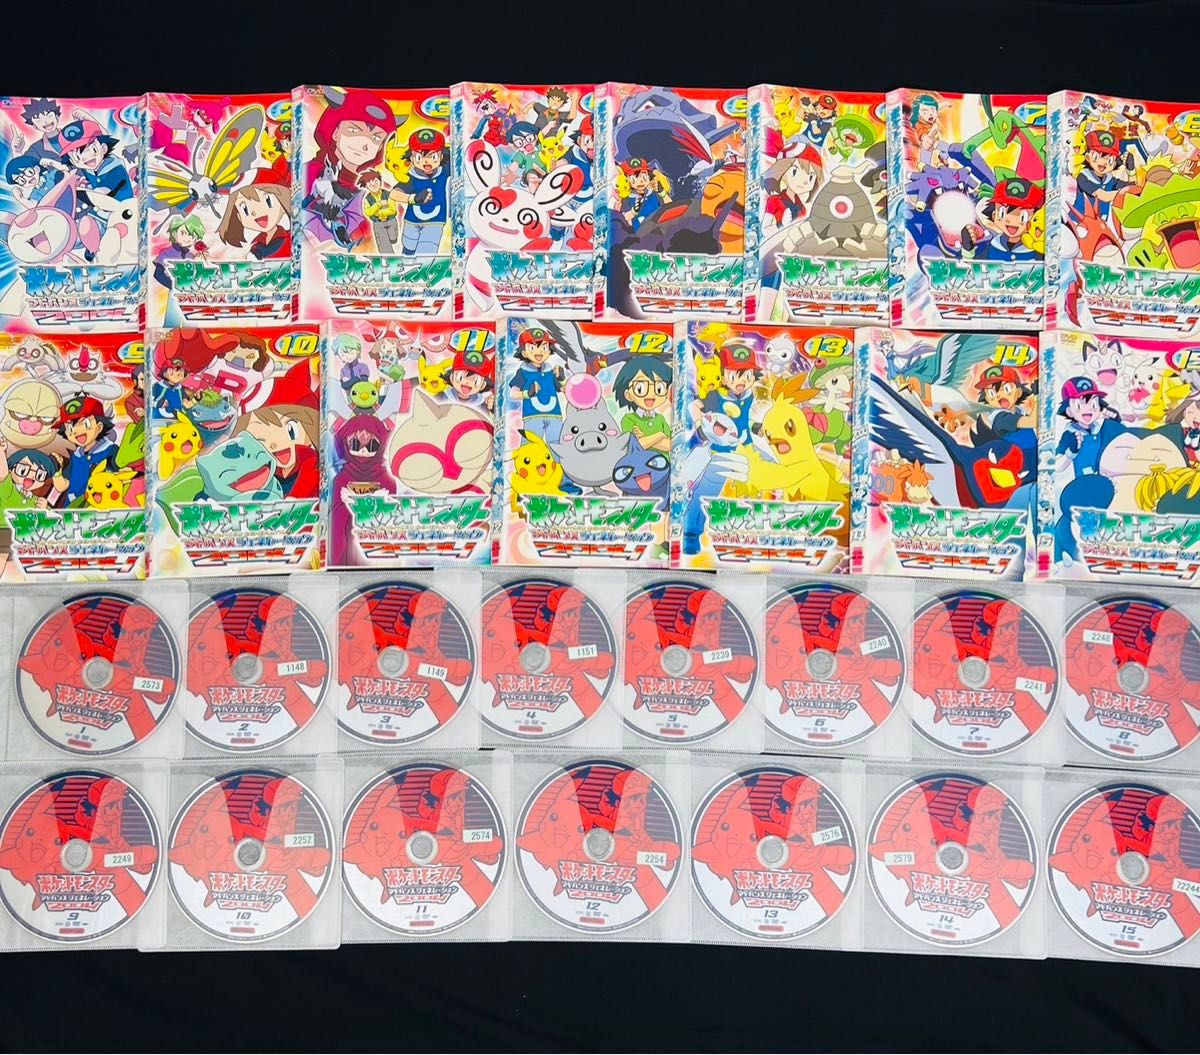 【全巻セット】ポケモン  テレビアニメ  DVD  全15巻セット